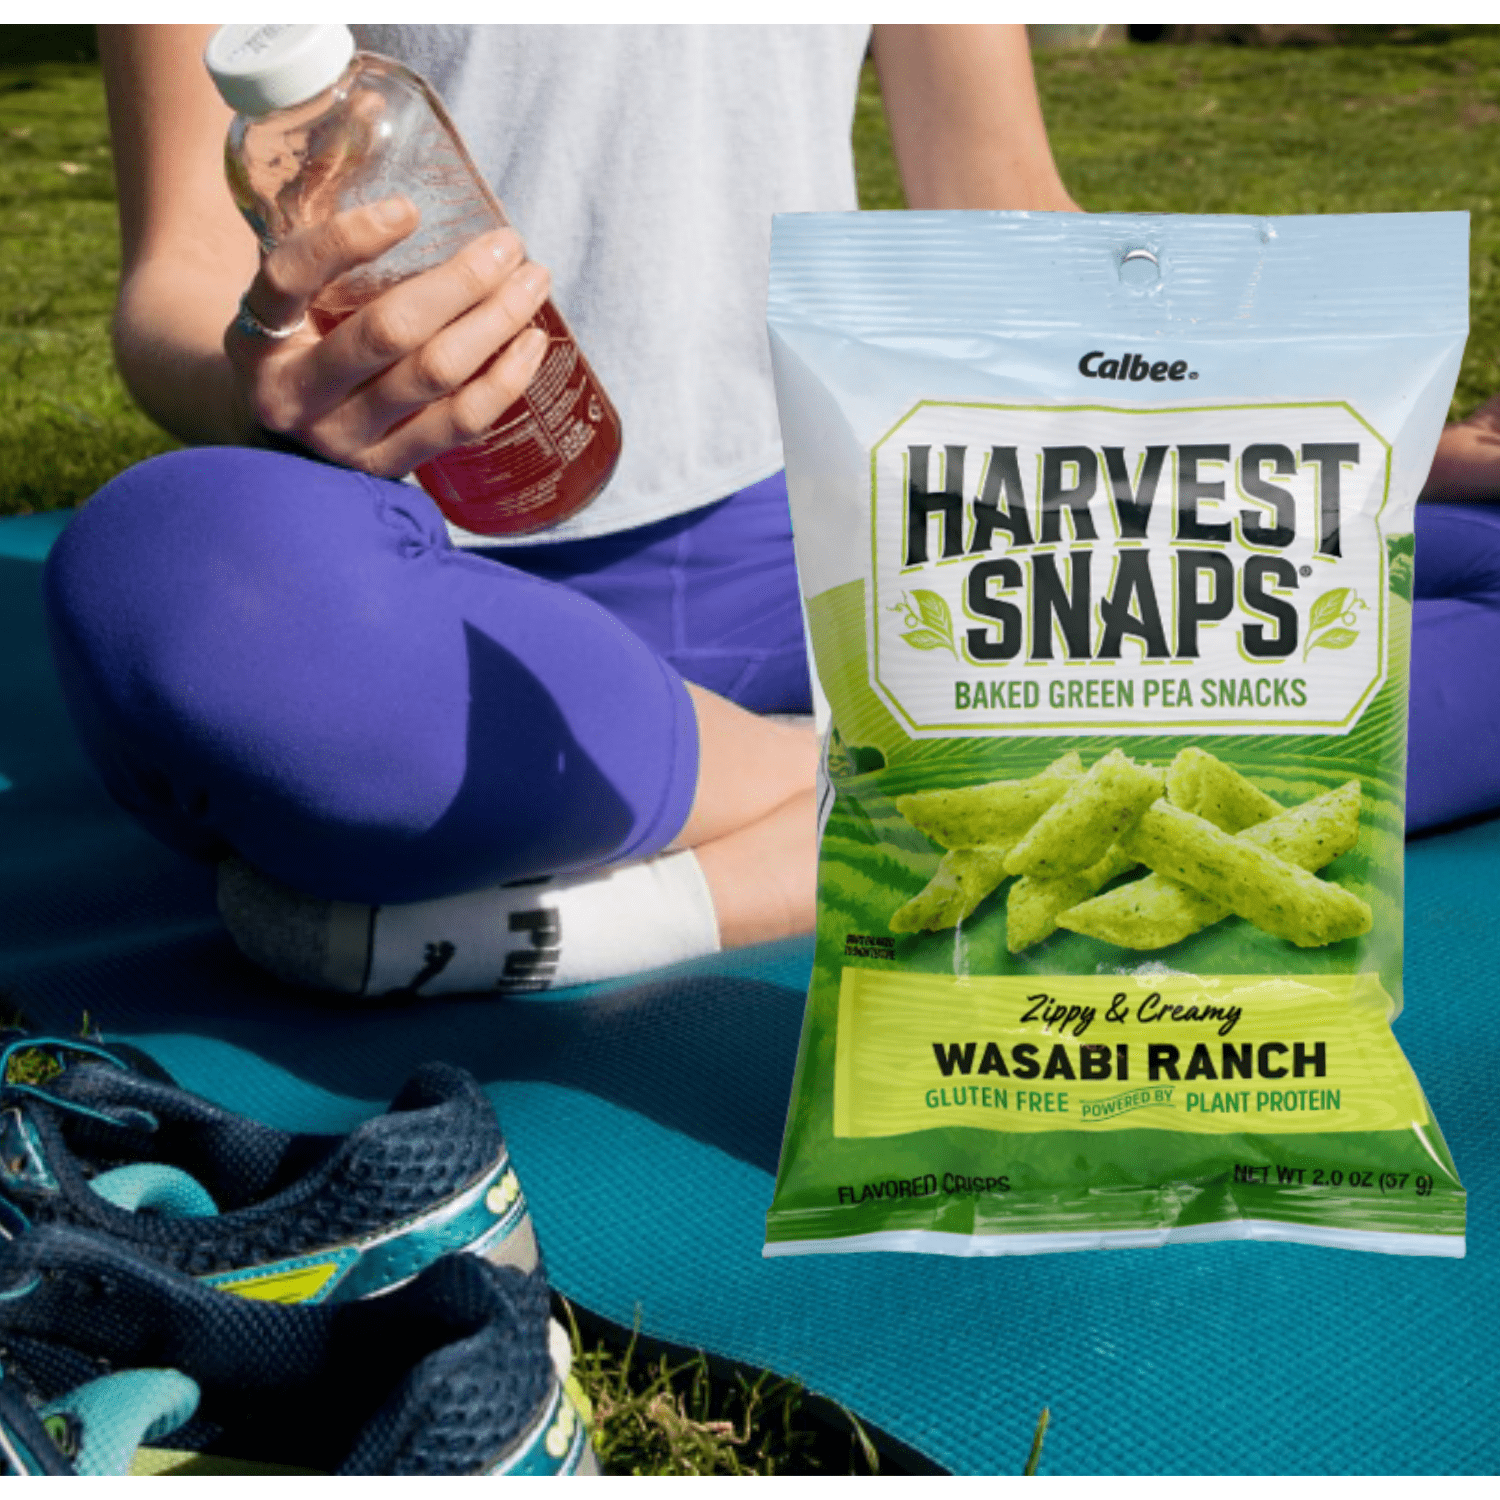 Calbee Harvest Snaps Sampler Variety Pack - Plant-Based Gluten Free Crisps - 3 oz 5 Pack in Sanisco Packaging